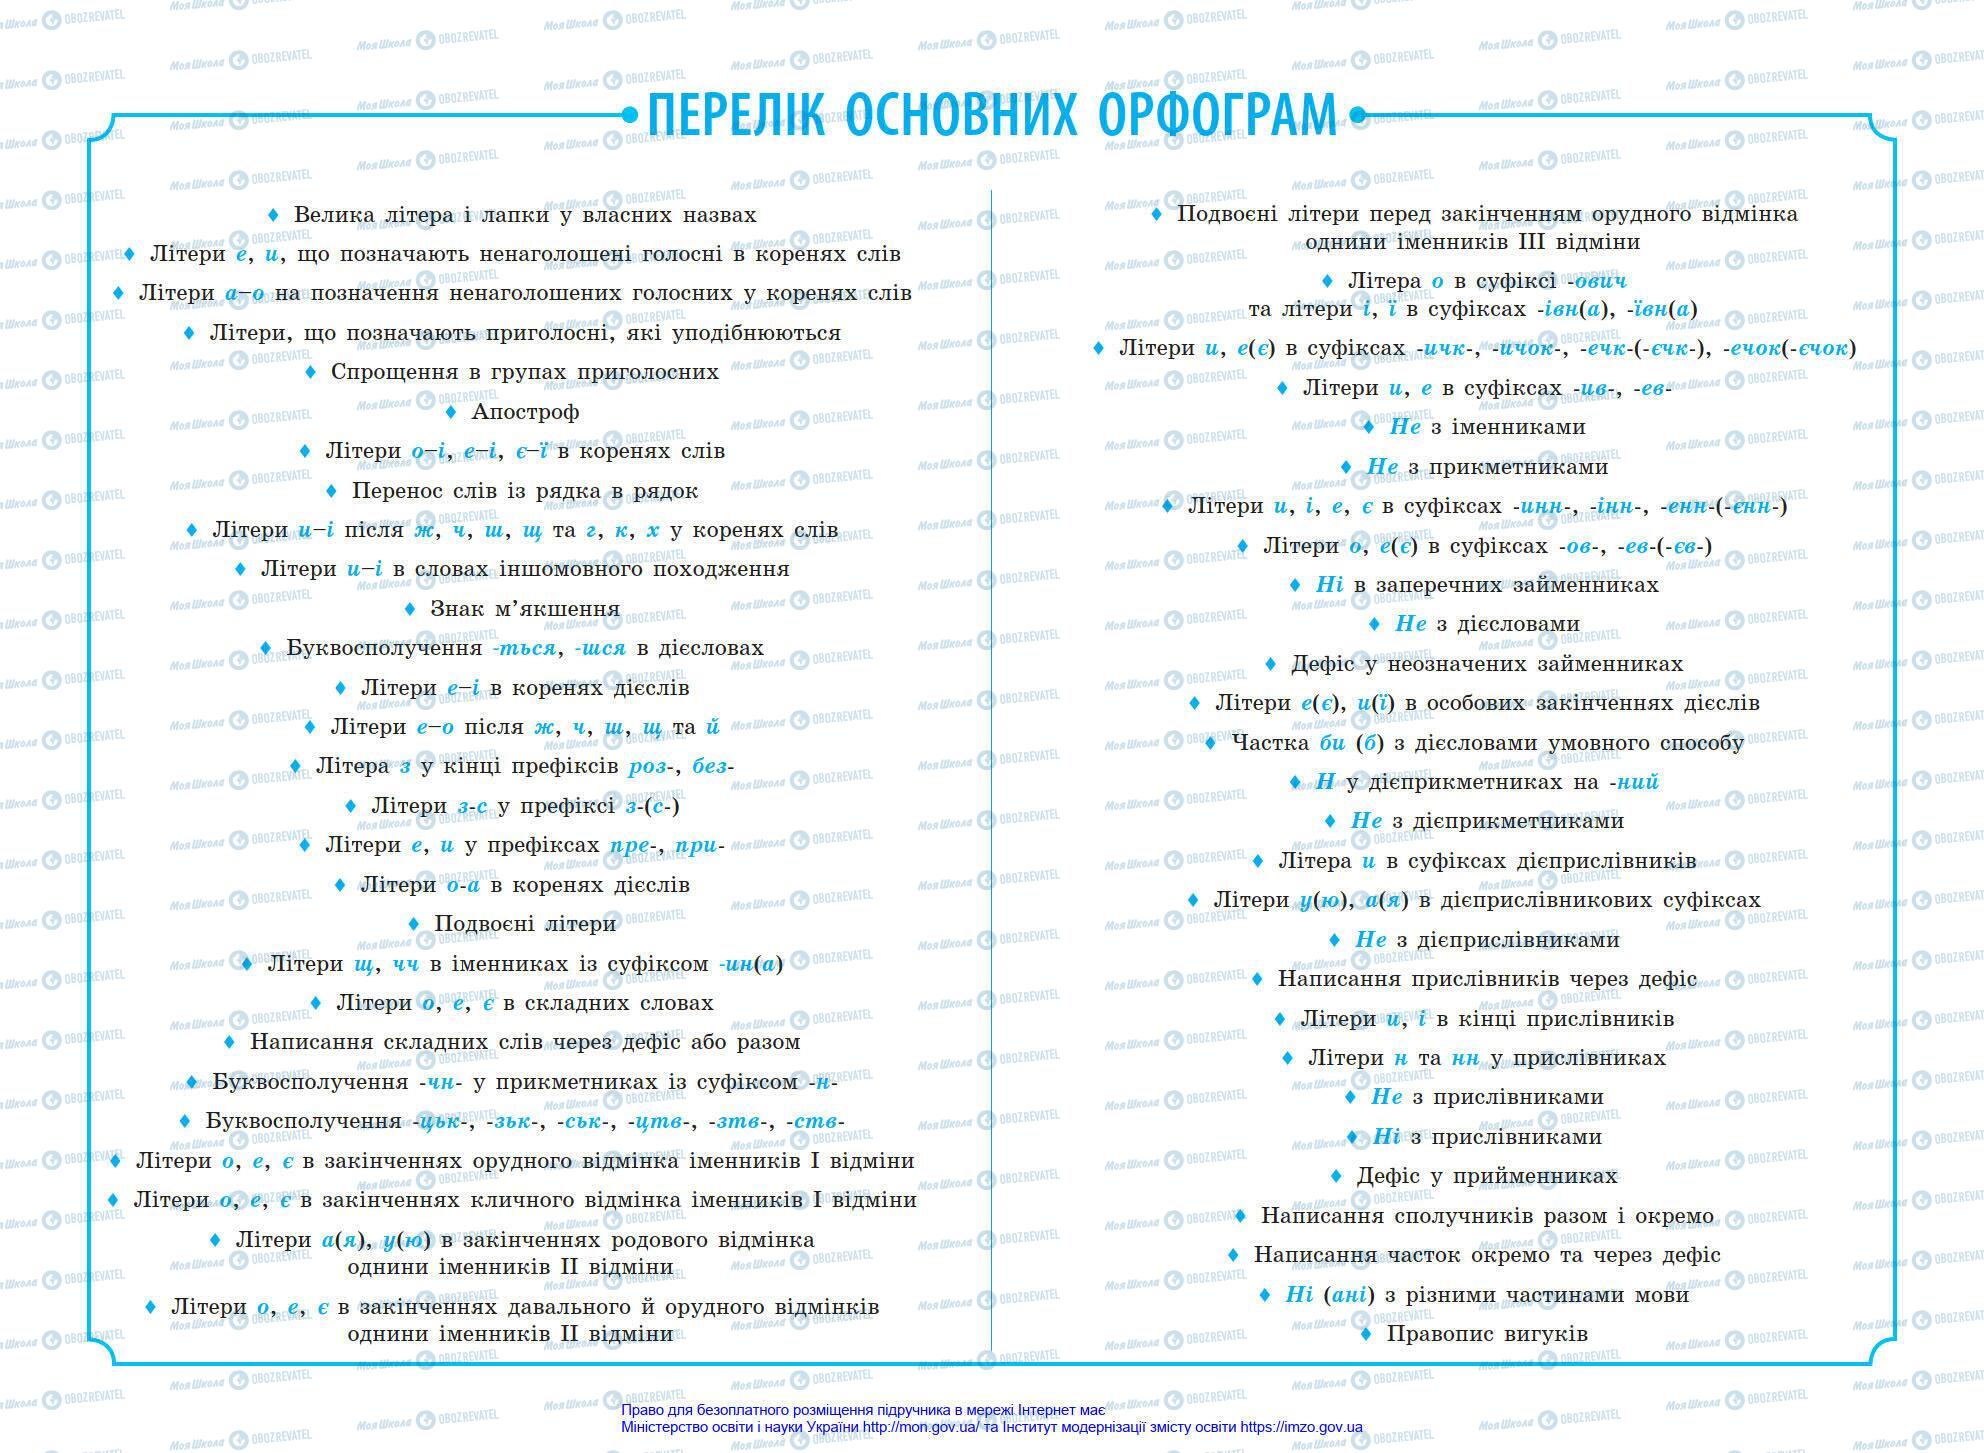 Підручники Українська мова 7 клас сторінка 256